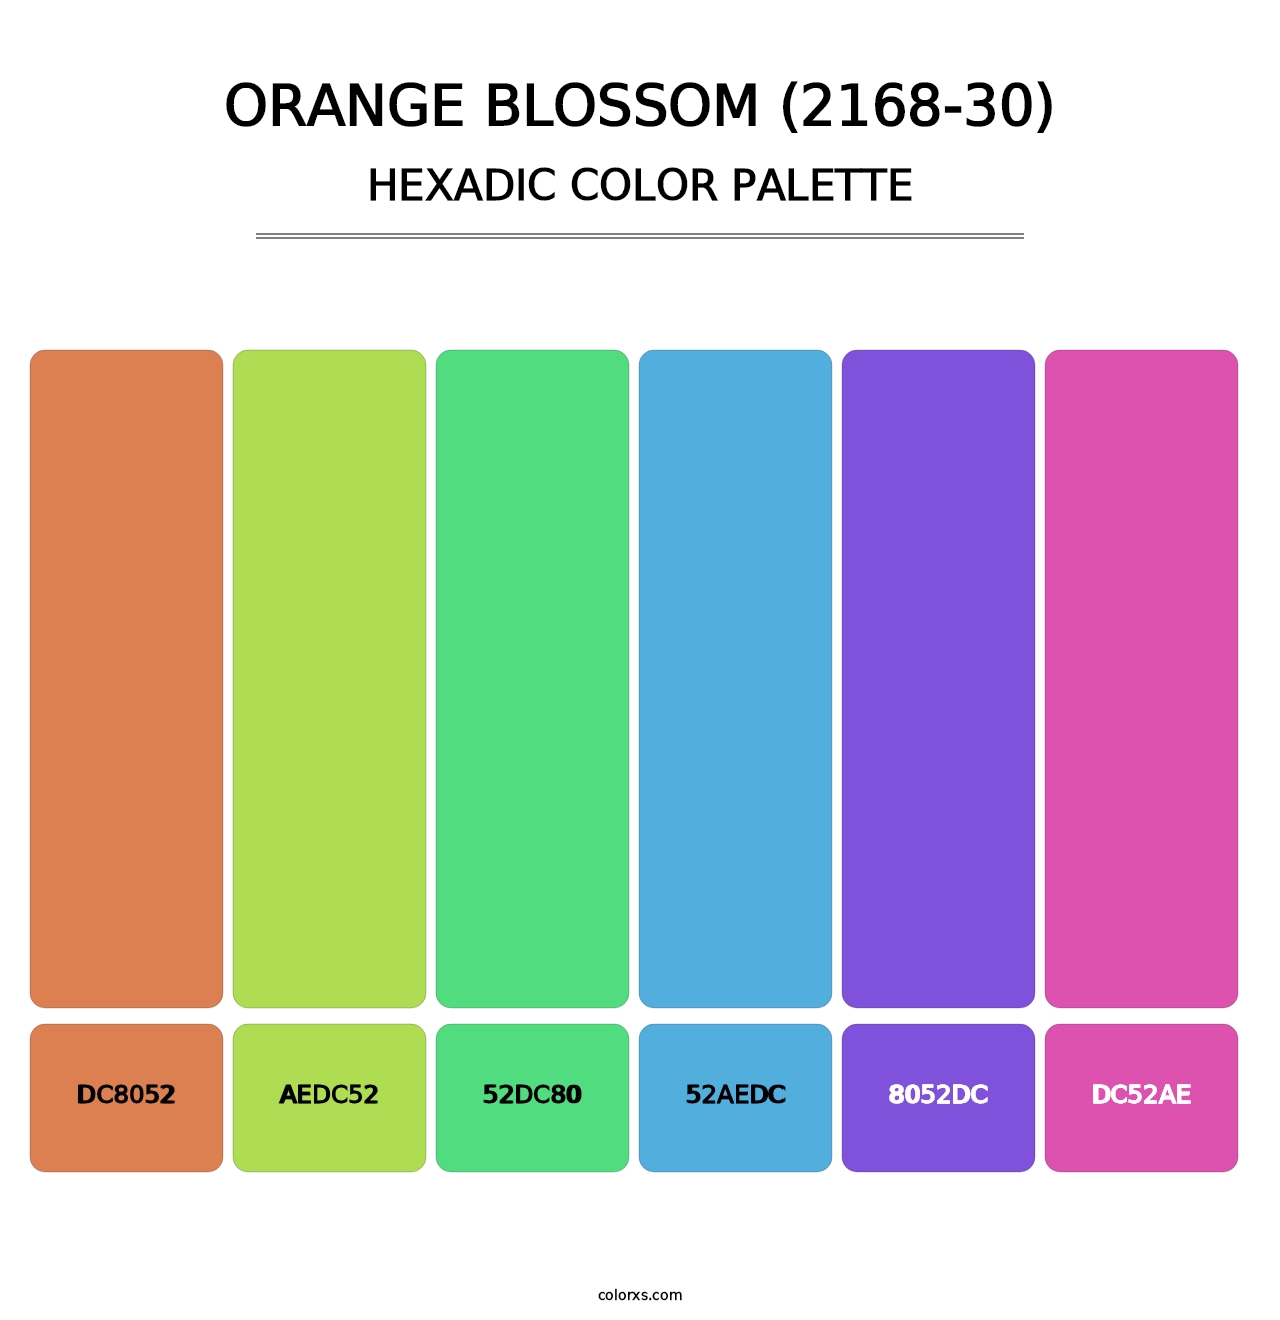 Orange Blossom (2168-30) - Hexadic Color Palette